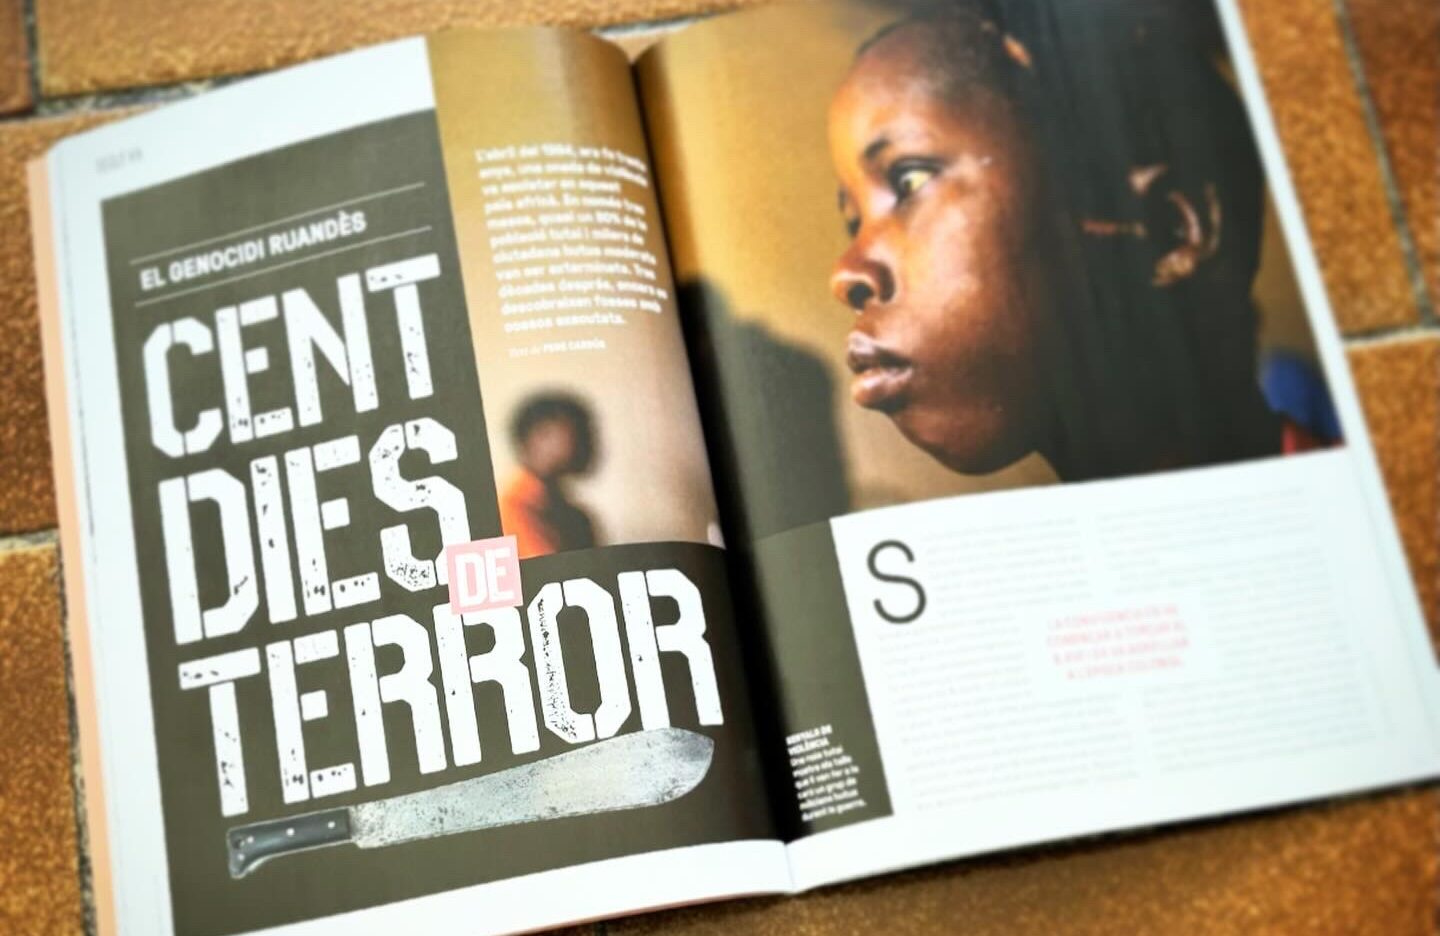 El genocidi ruandès: cent dies de terror (revista Sàpiens)